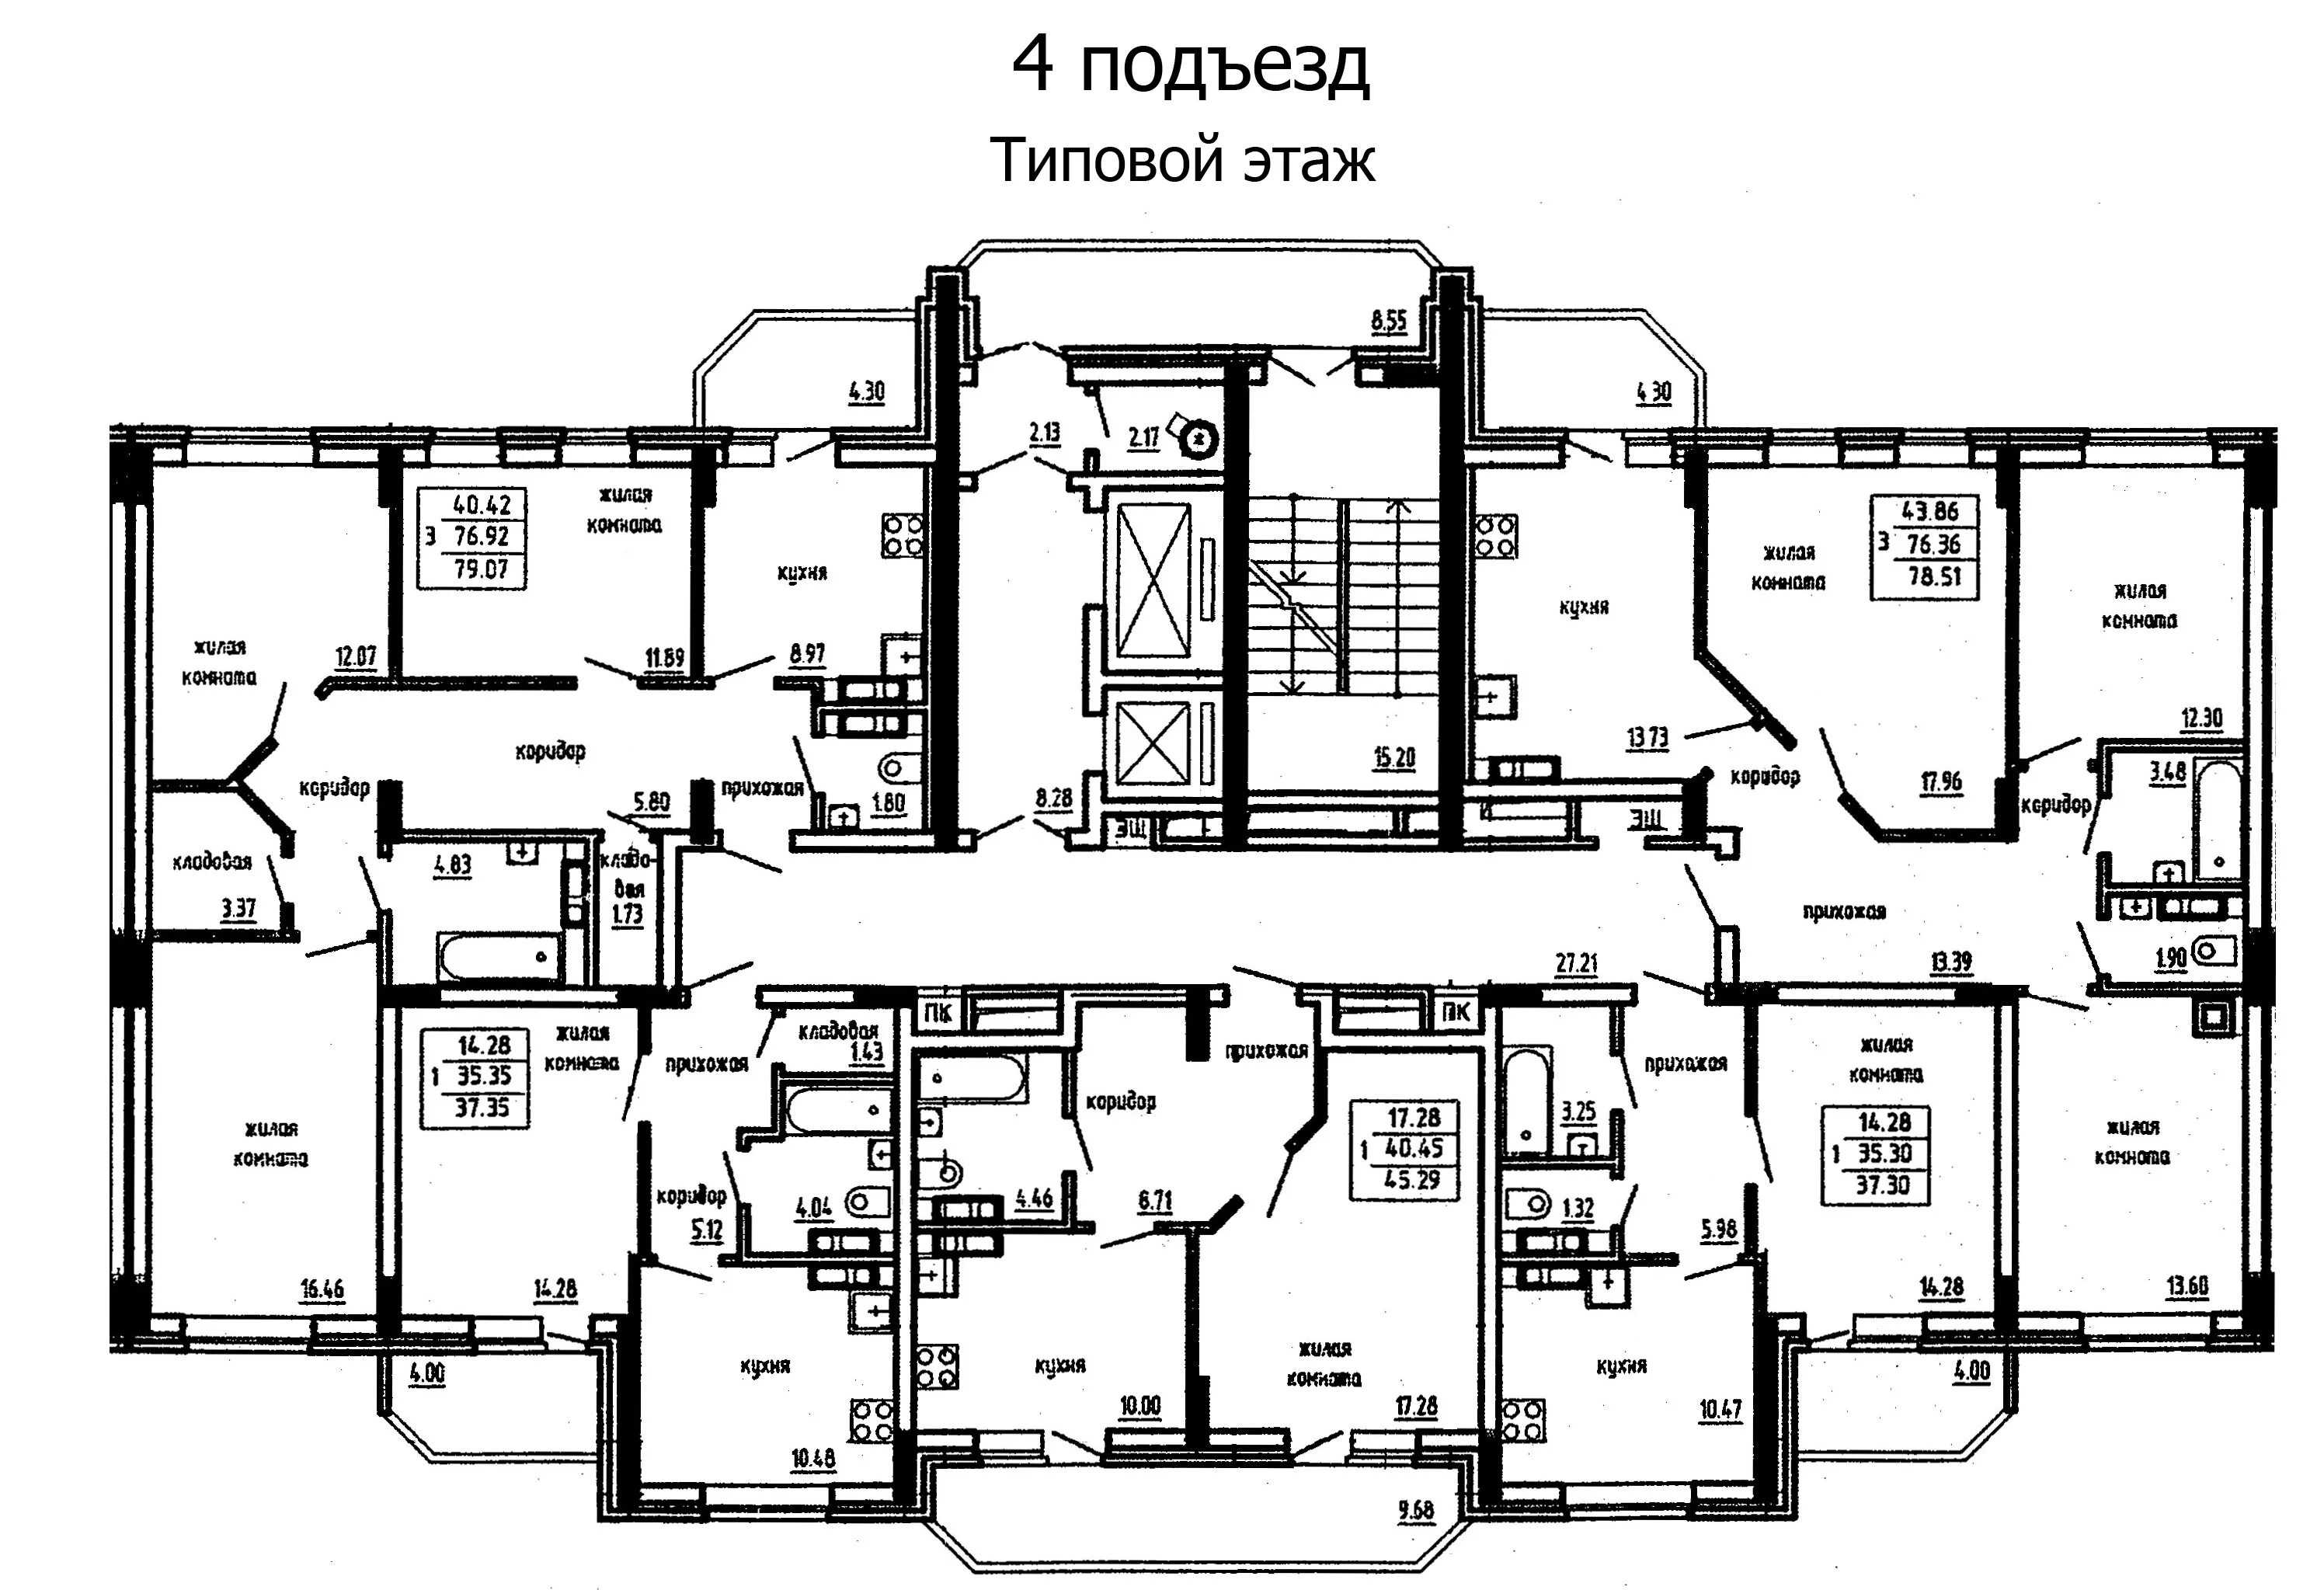 Схема подъезда многоэтажного жилого дома. План многоэтажного жилого дома 1 подъезд. Схема 4 подъездного панельного дома. Планировки в панельных домах 9 этажей 4 подъезда.